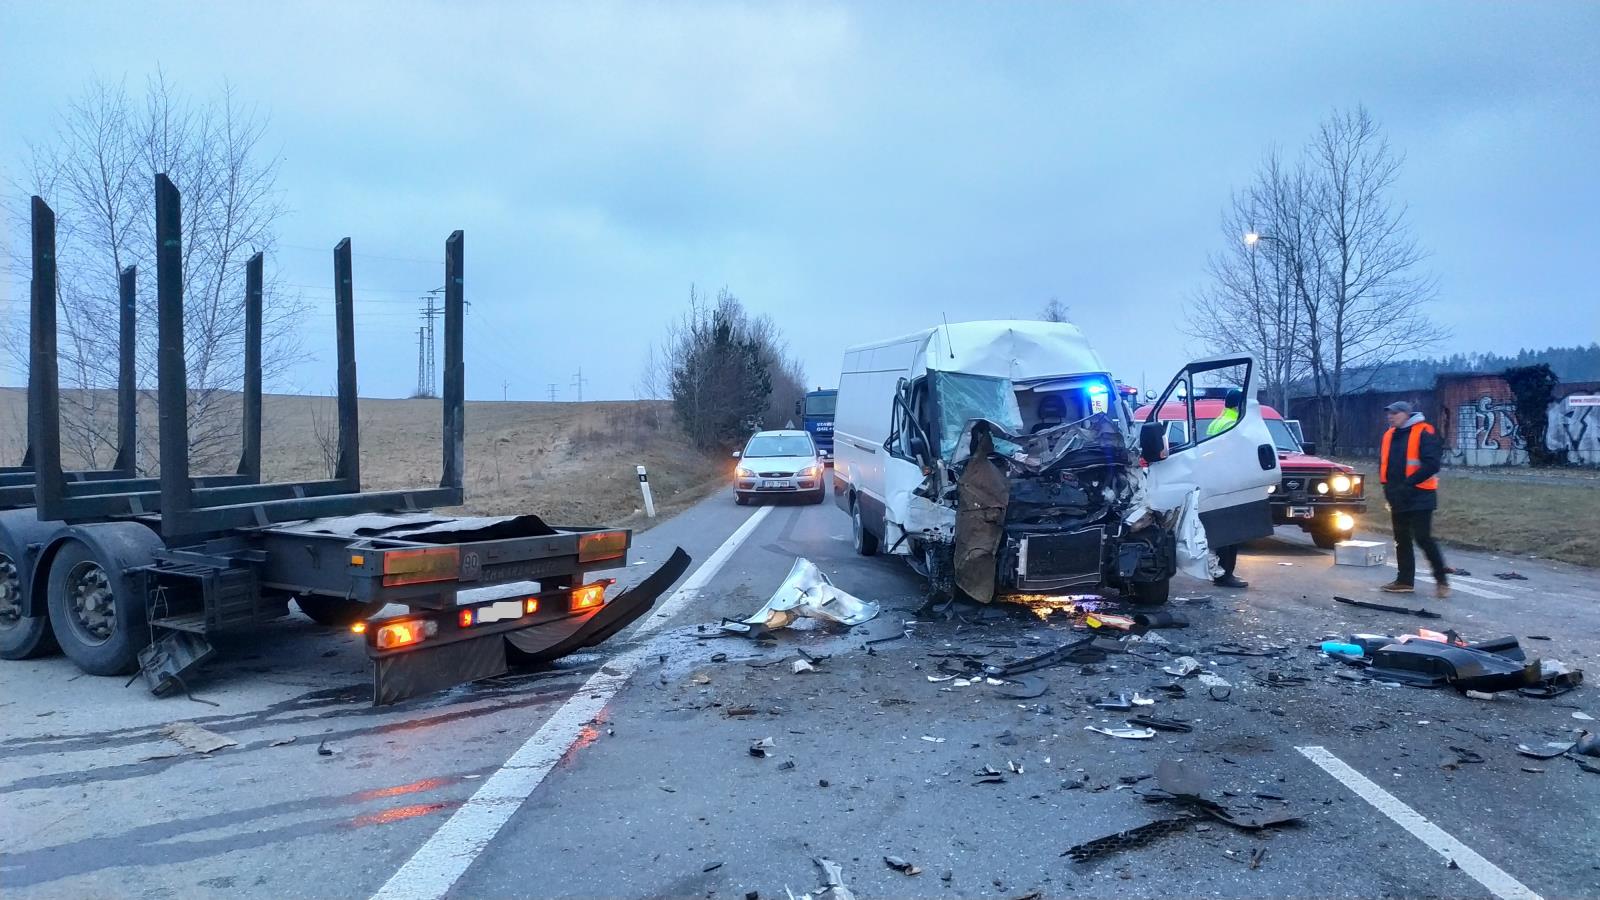 Dopravní nehoda NA a dodávky, Nový Dvůr - 23. 1. 2019 (3).jpg